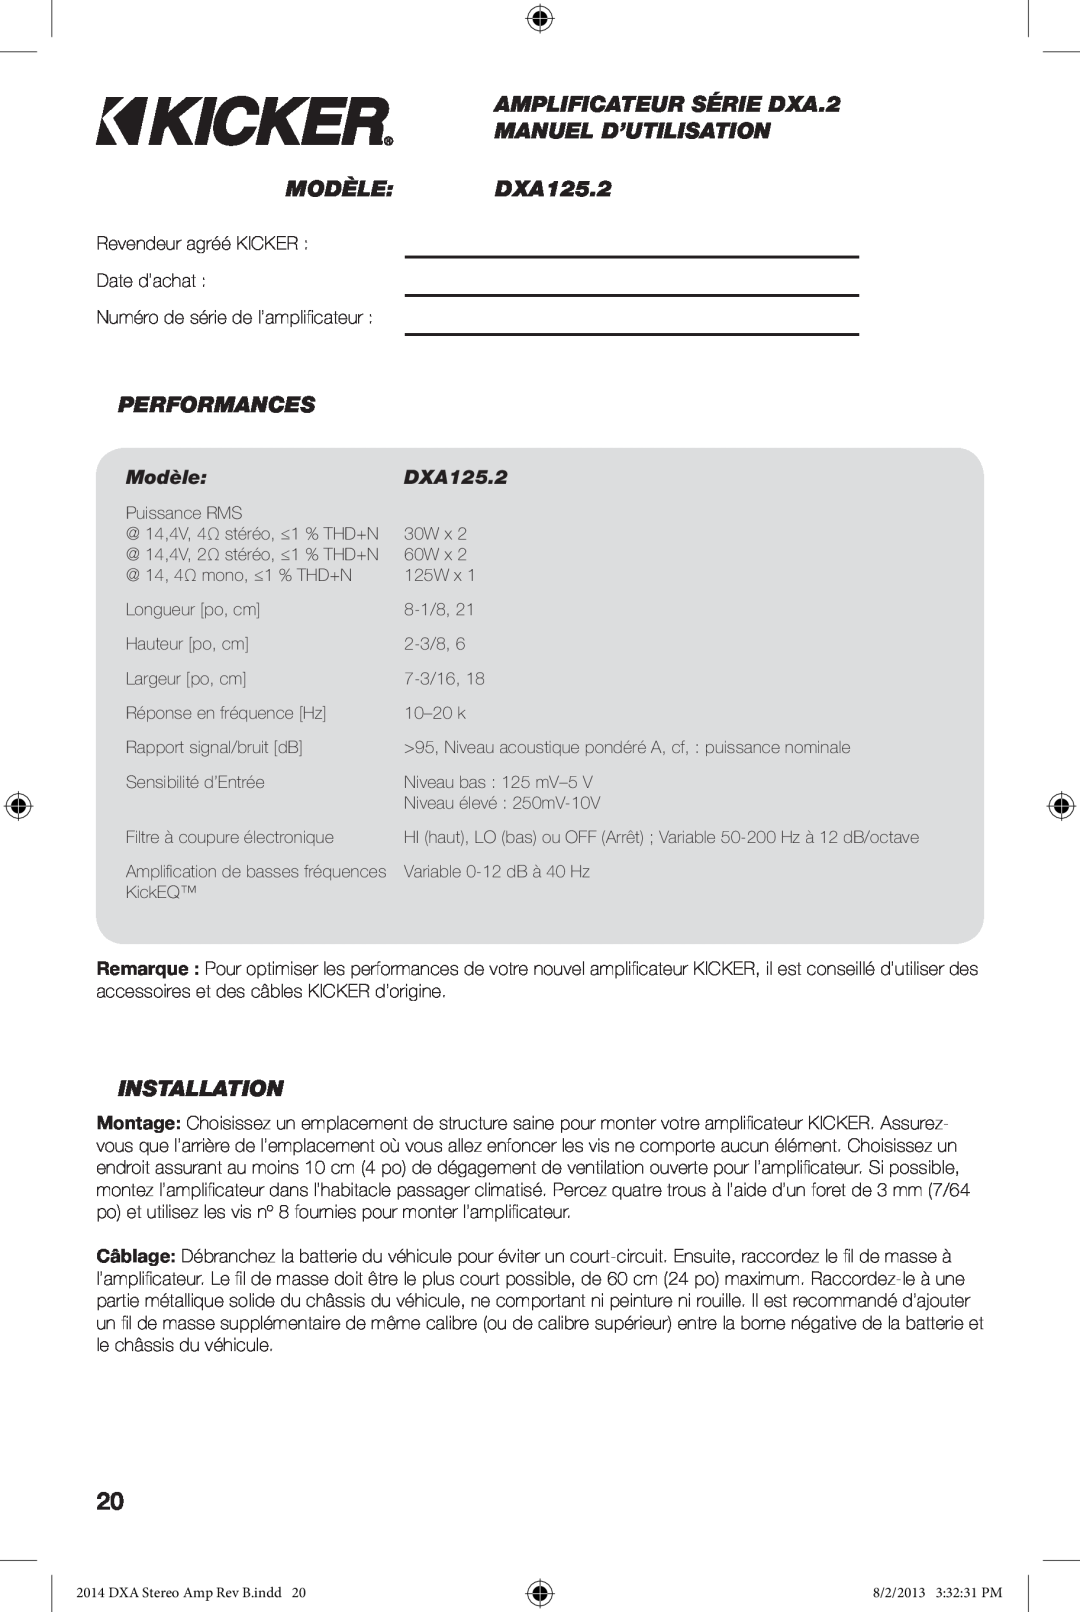 Kicker owner manual AMPLIFICATEUR SÉRIE DXA.2 MANUEL D’UTILISATION MODÈLE DXA125.2, Performances, Modèle, Installation 